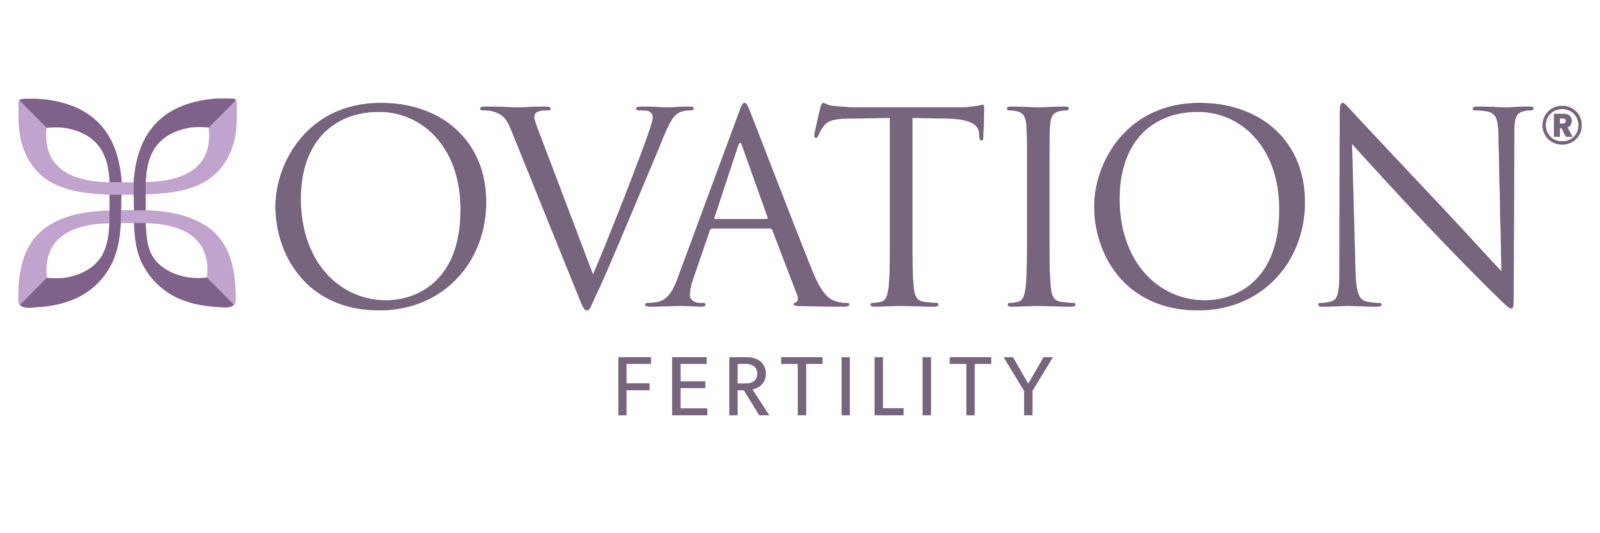 Ovation Fertility